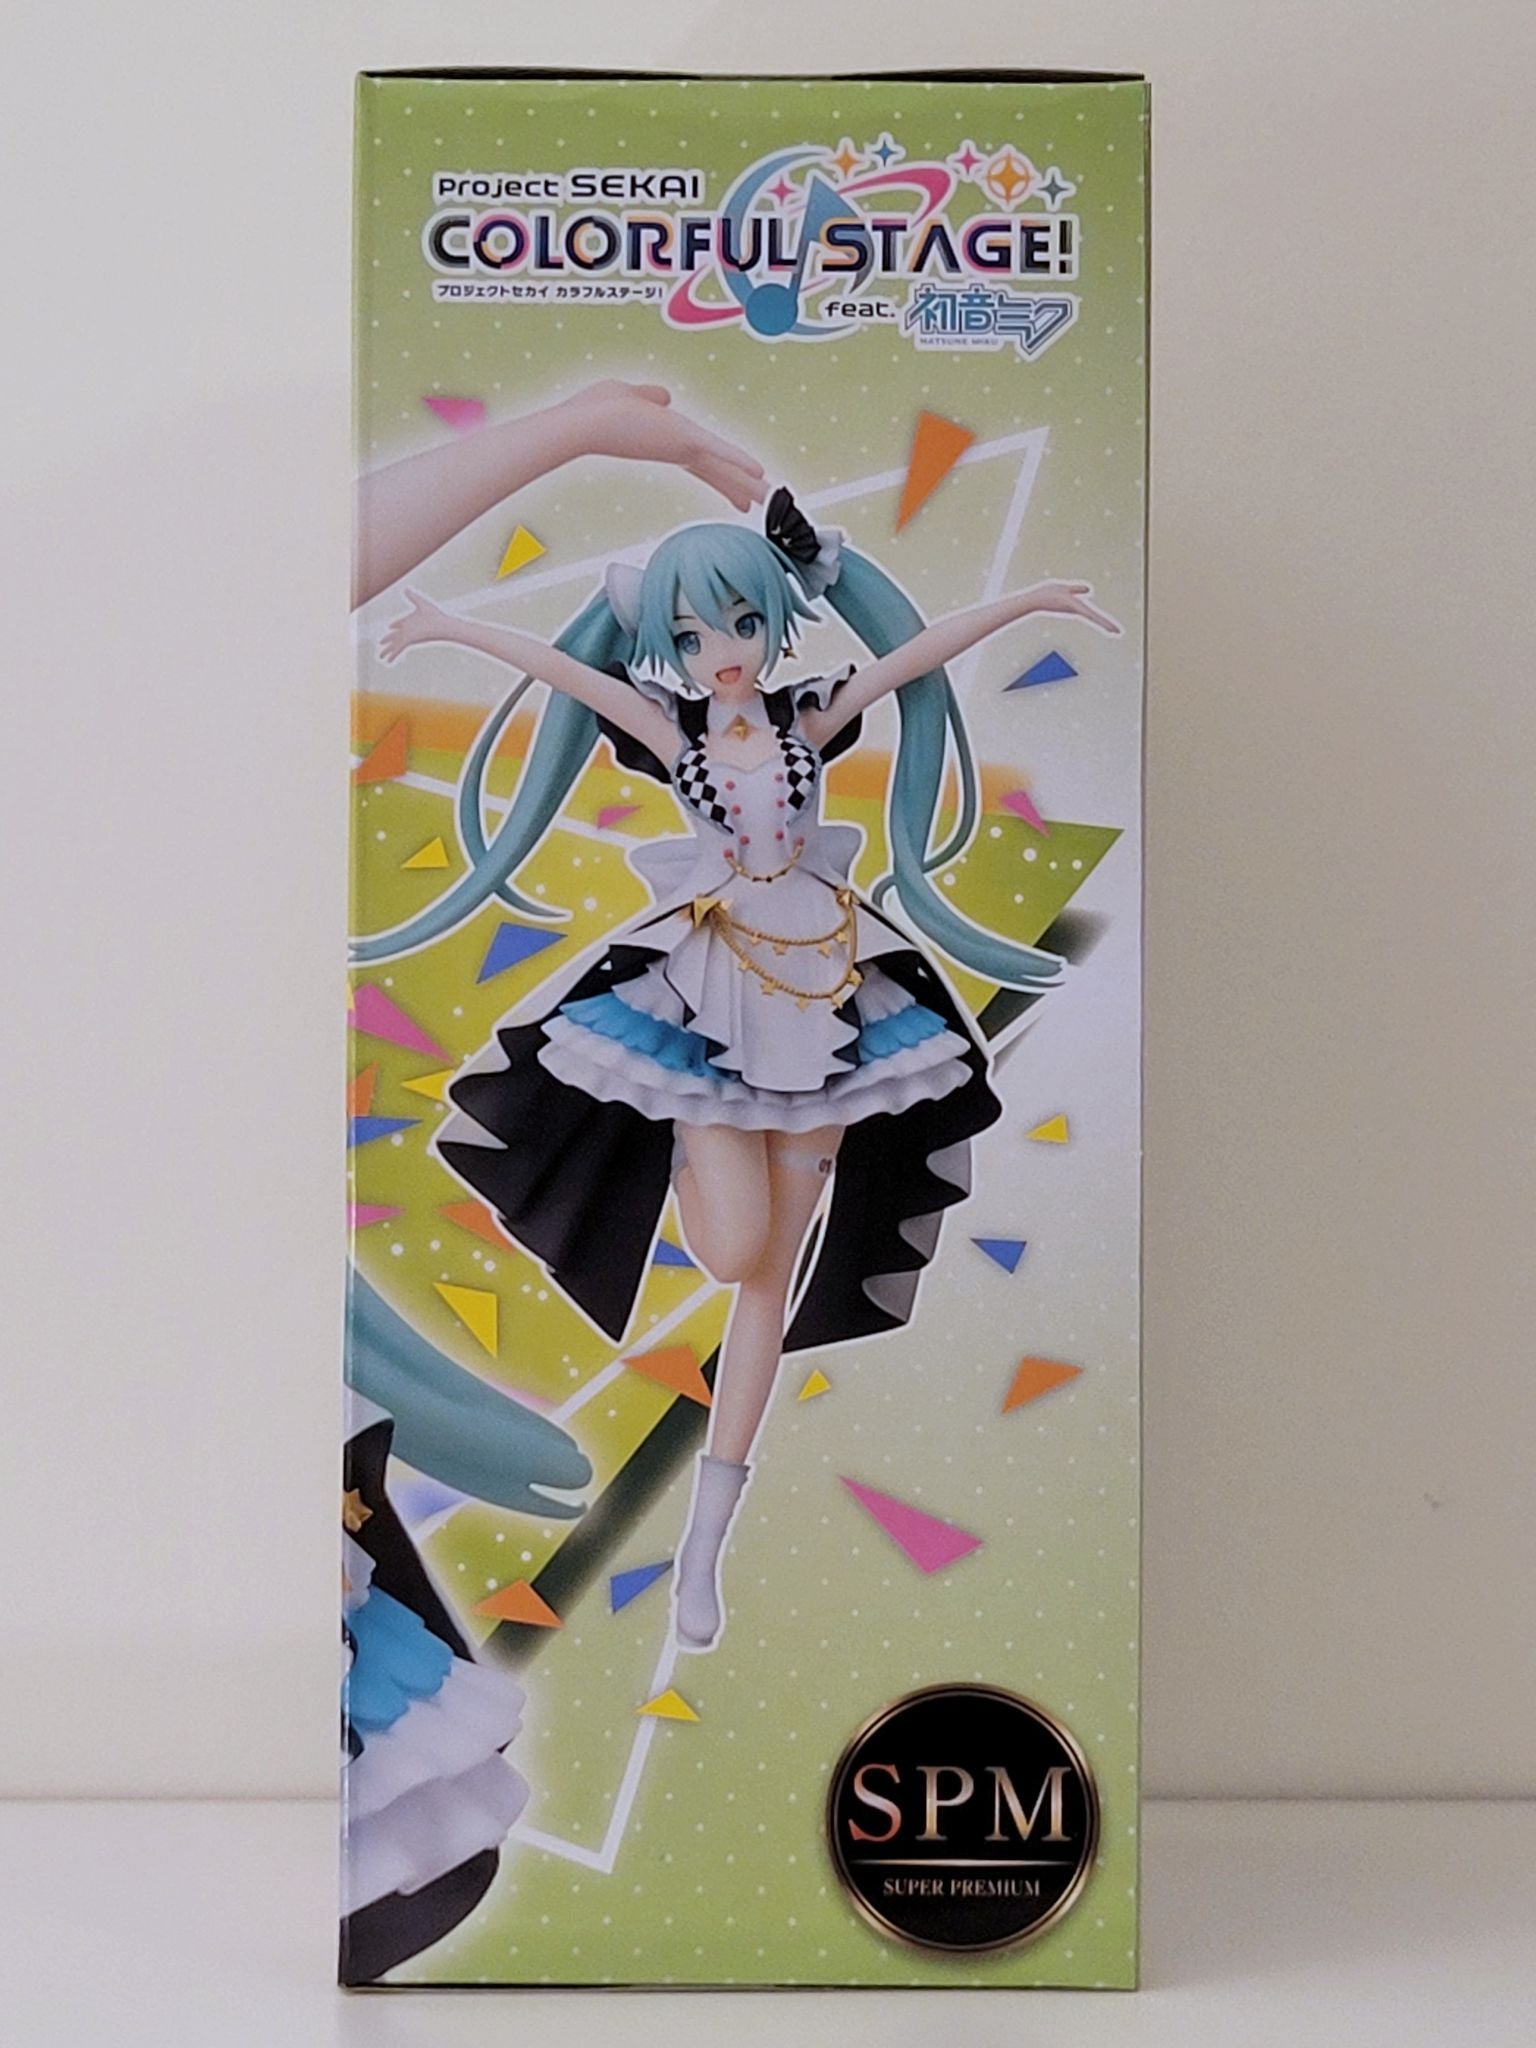 Hatsune Miku "Project Sekai Colorful Stage Ver." Super Premium figure by SEGA - 4